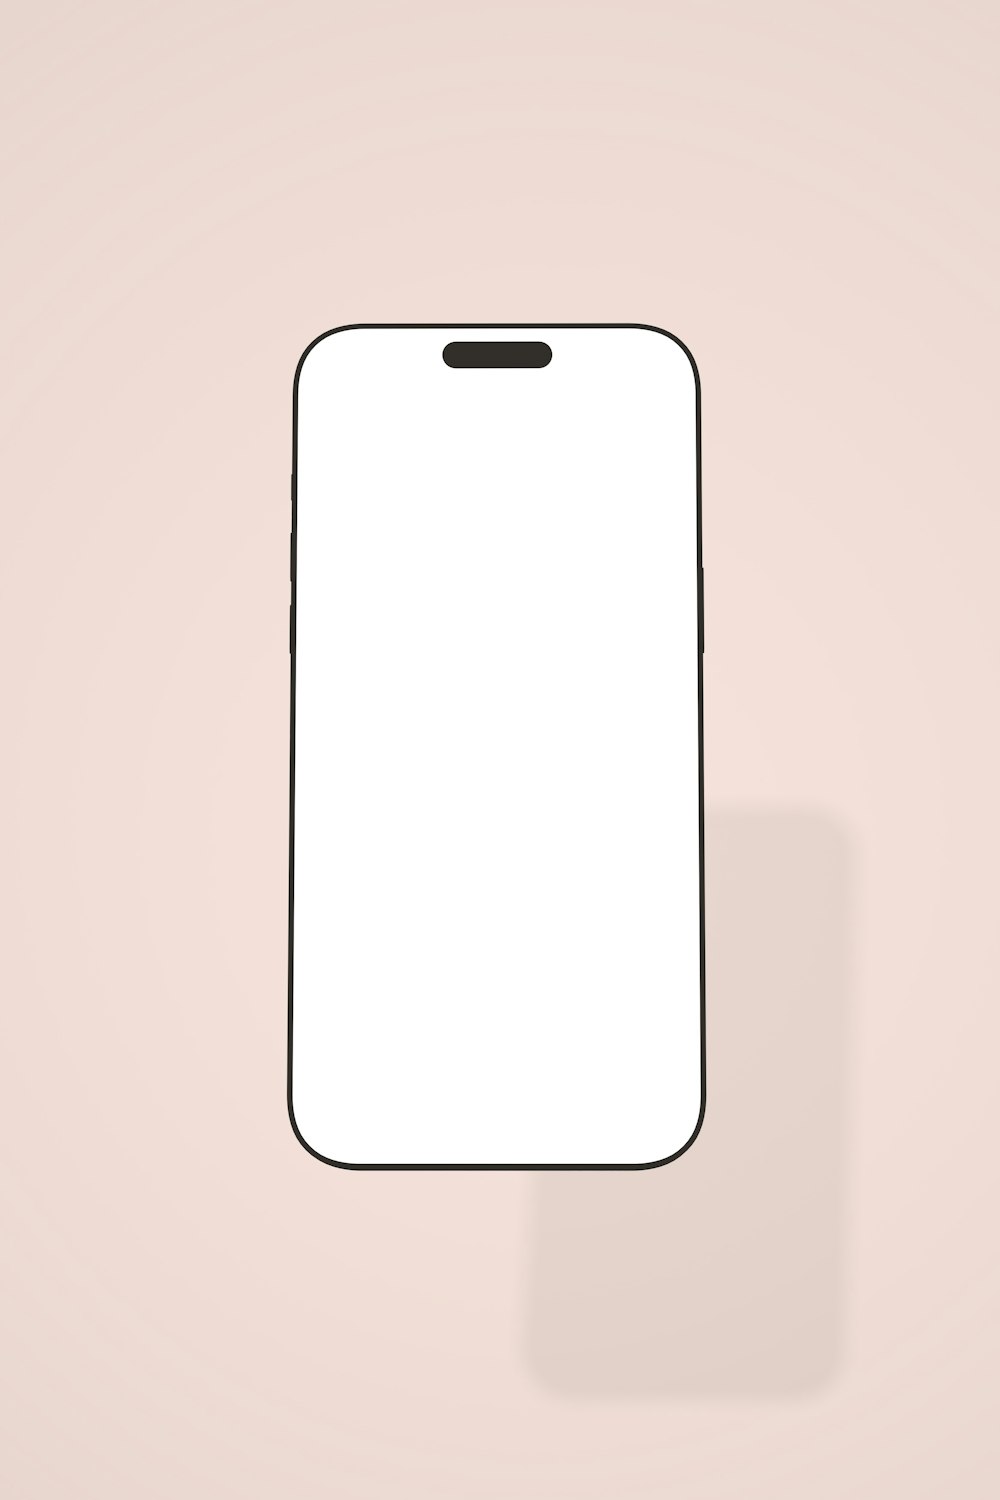 Un teléfono celular blanco sentado encima de una pared rosa